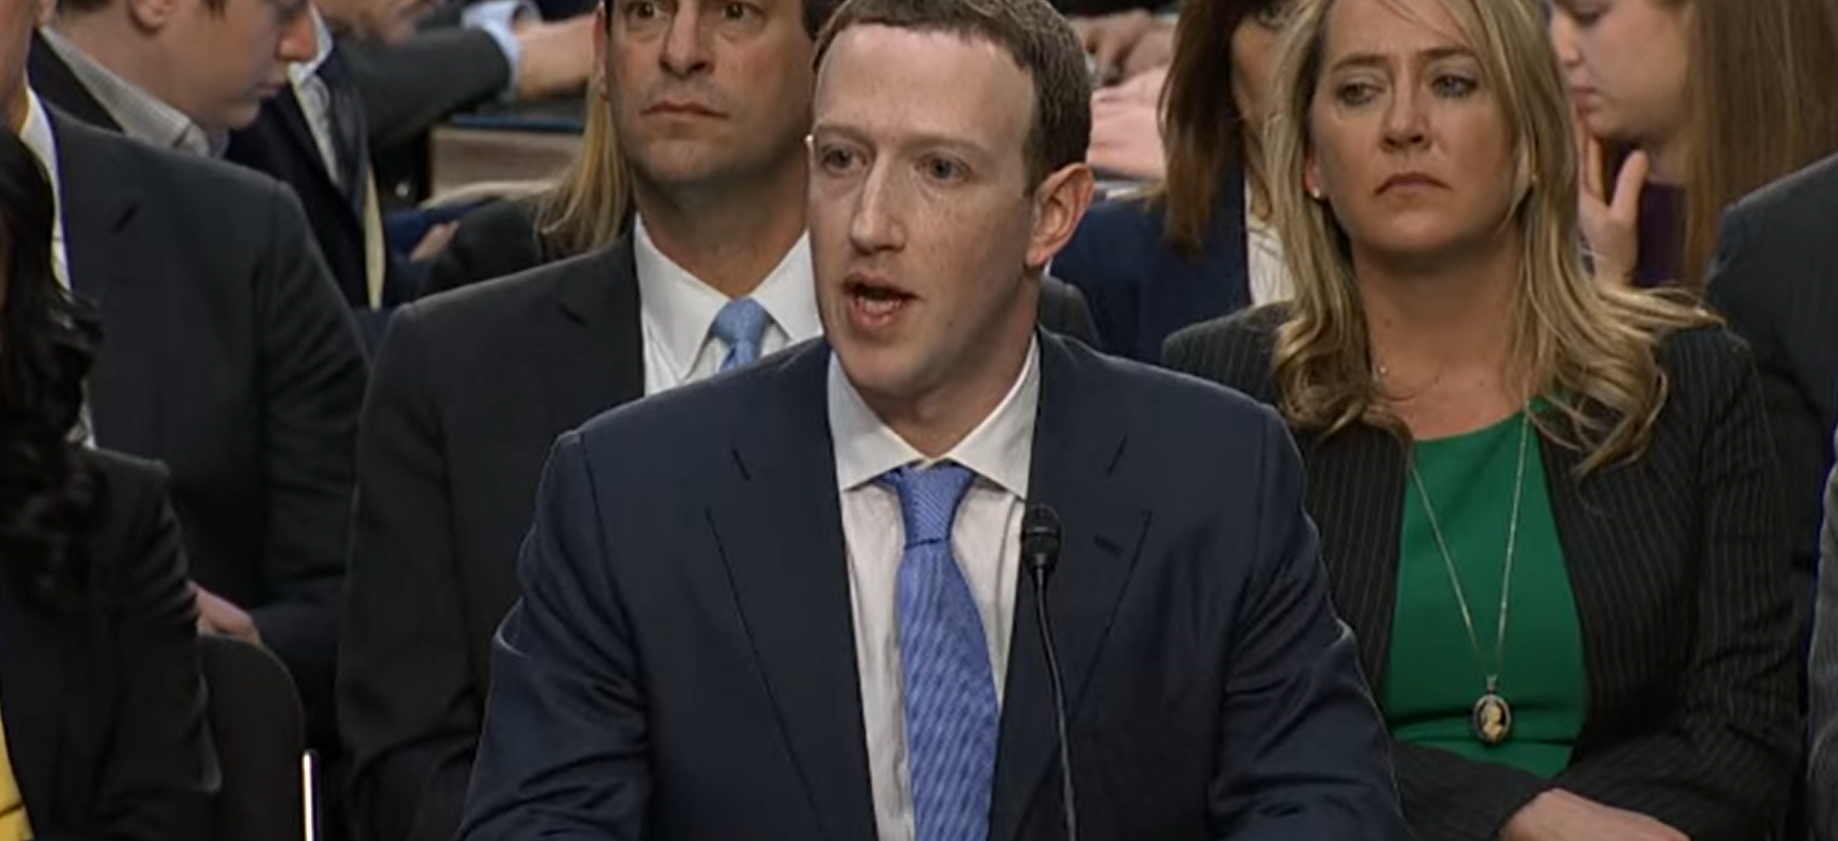 Mark Zuckerberg compareció ante el Congreso en 2018 debido al escándalo de Cambridge Analytica. FOTO: YouTube